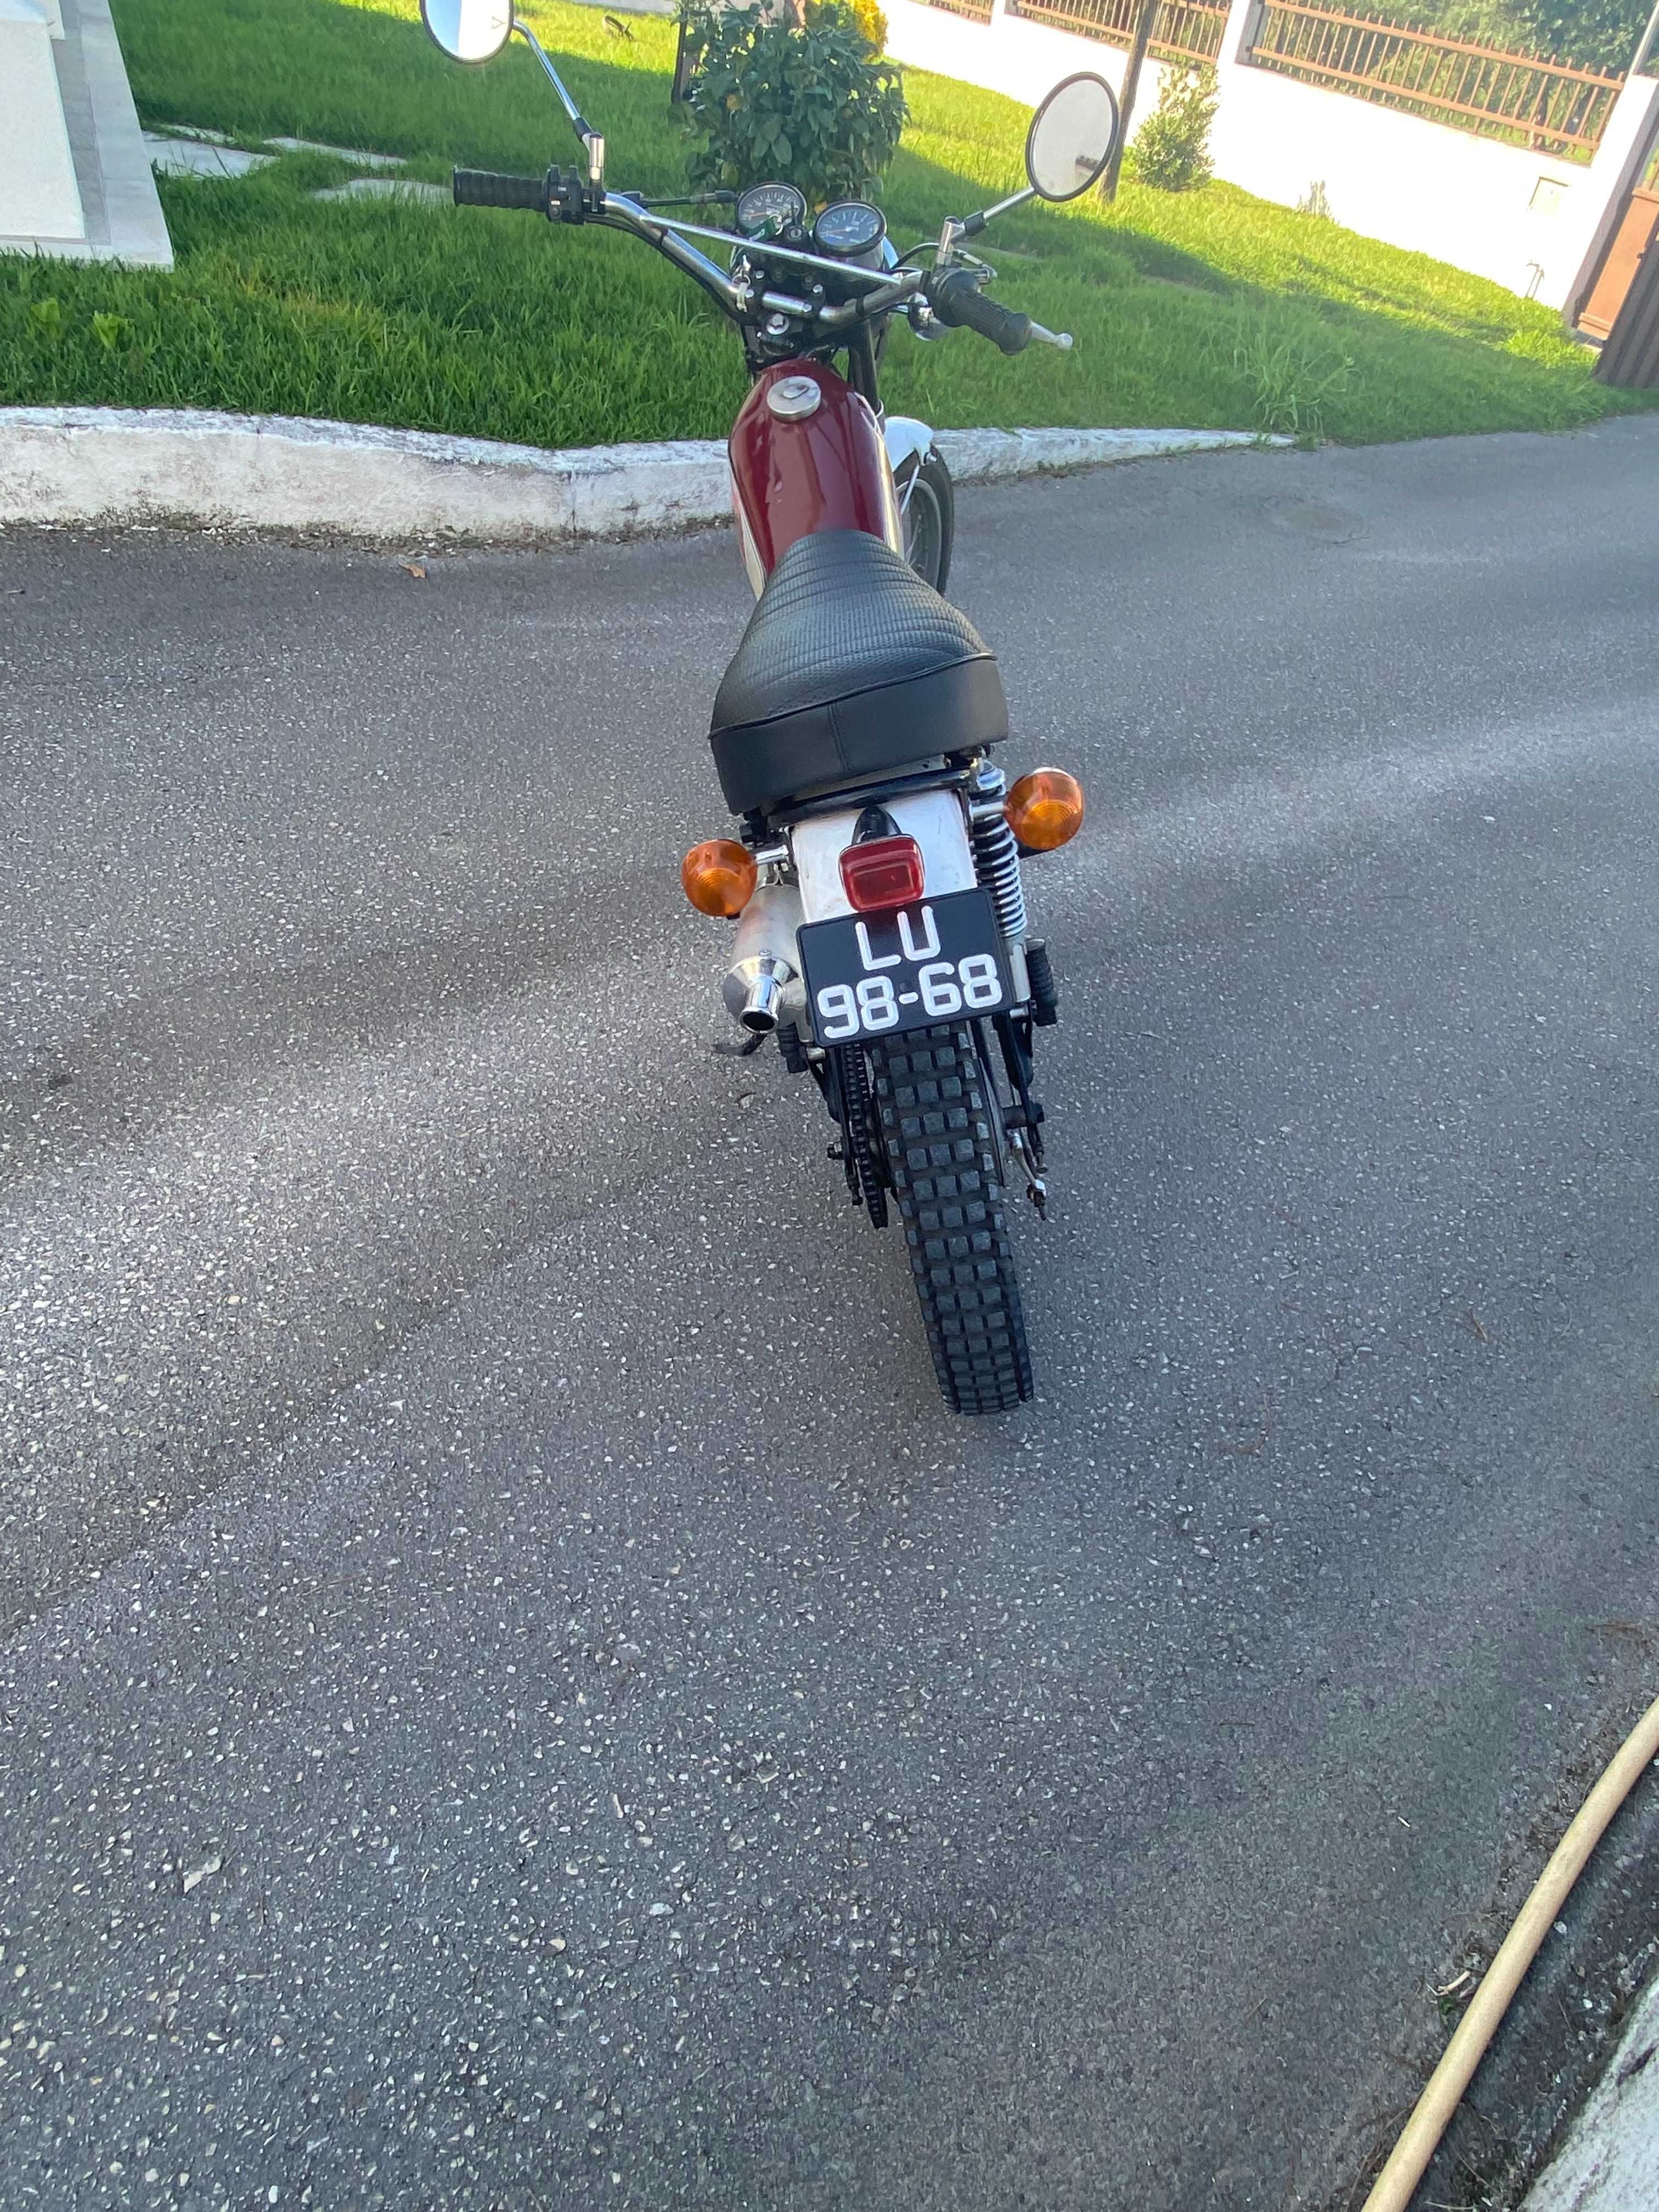 Yamaha AT1 125cc